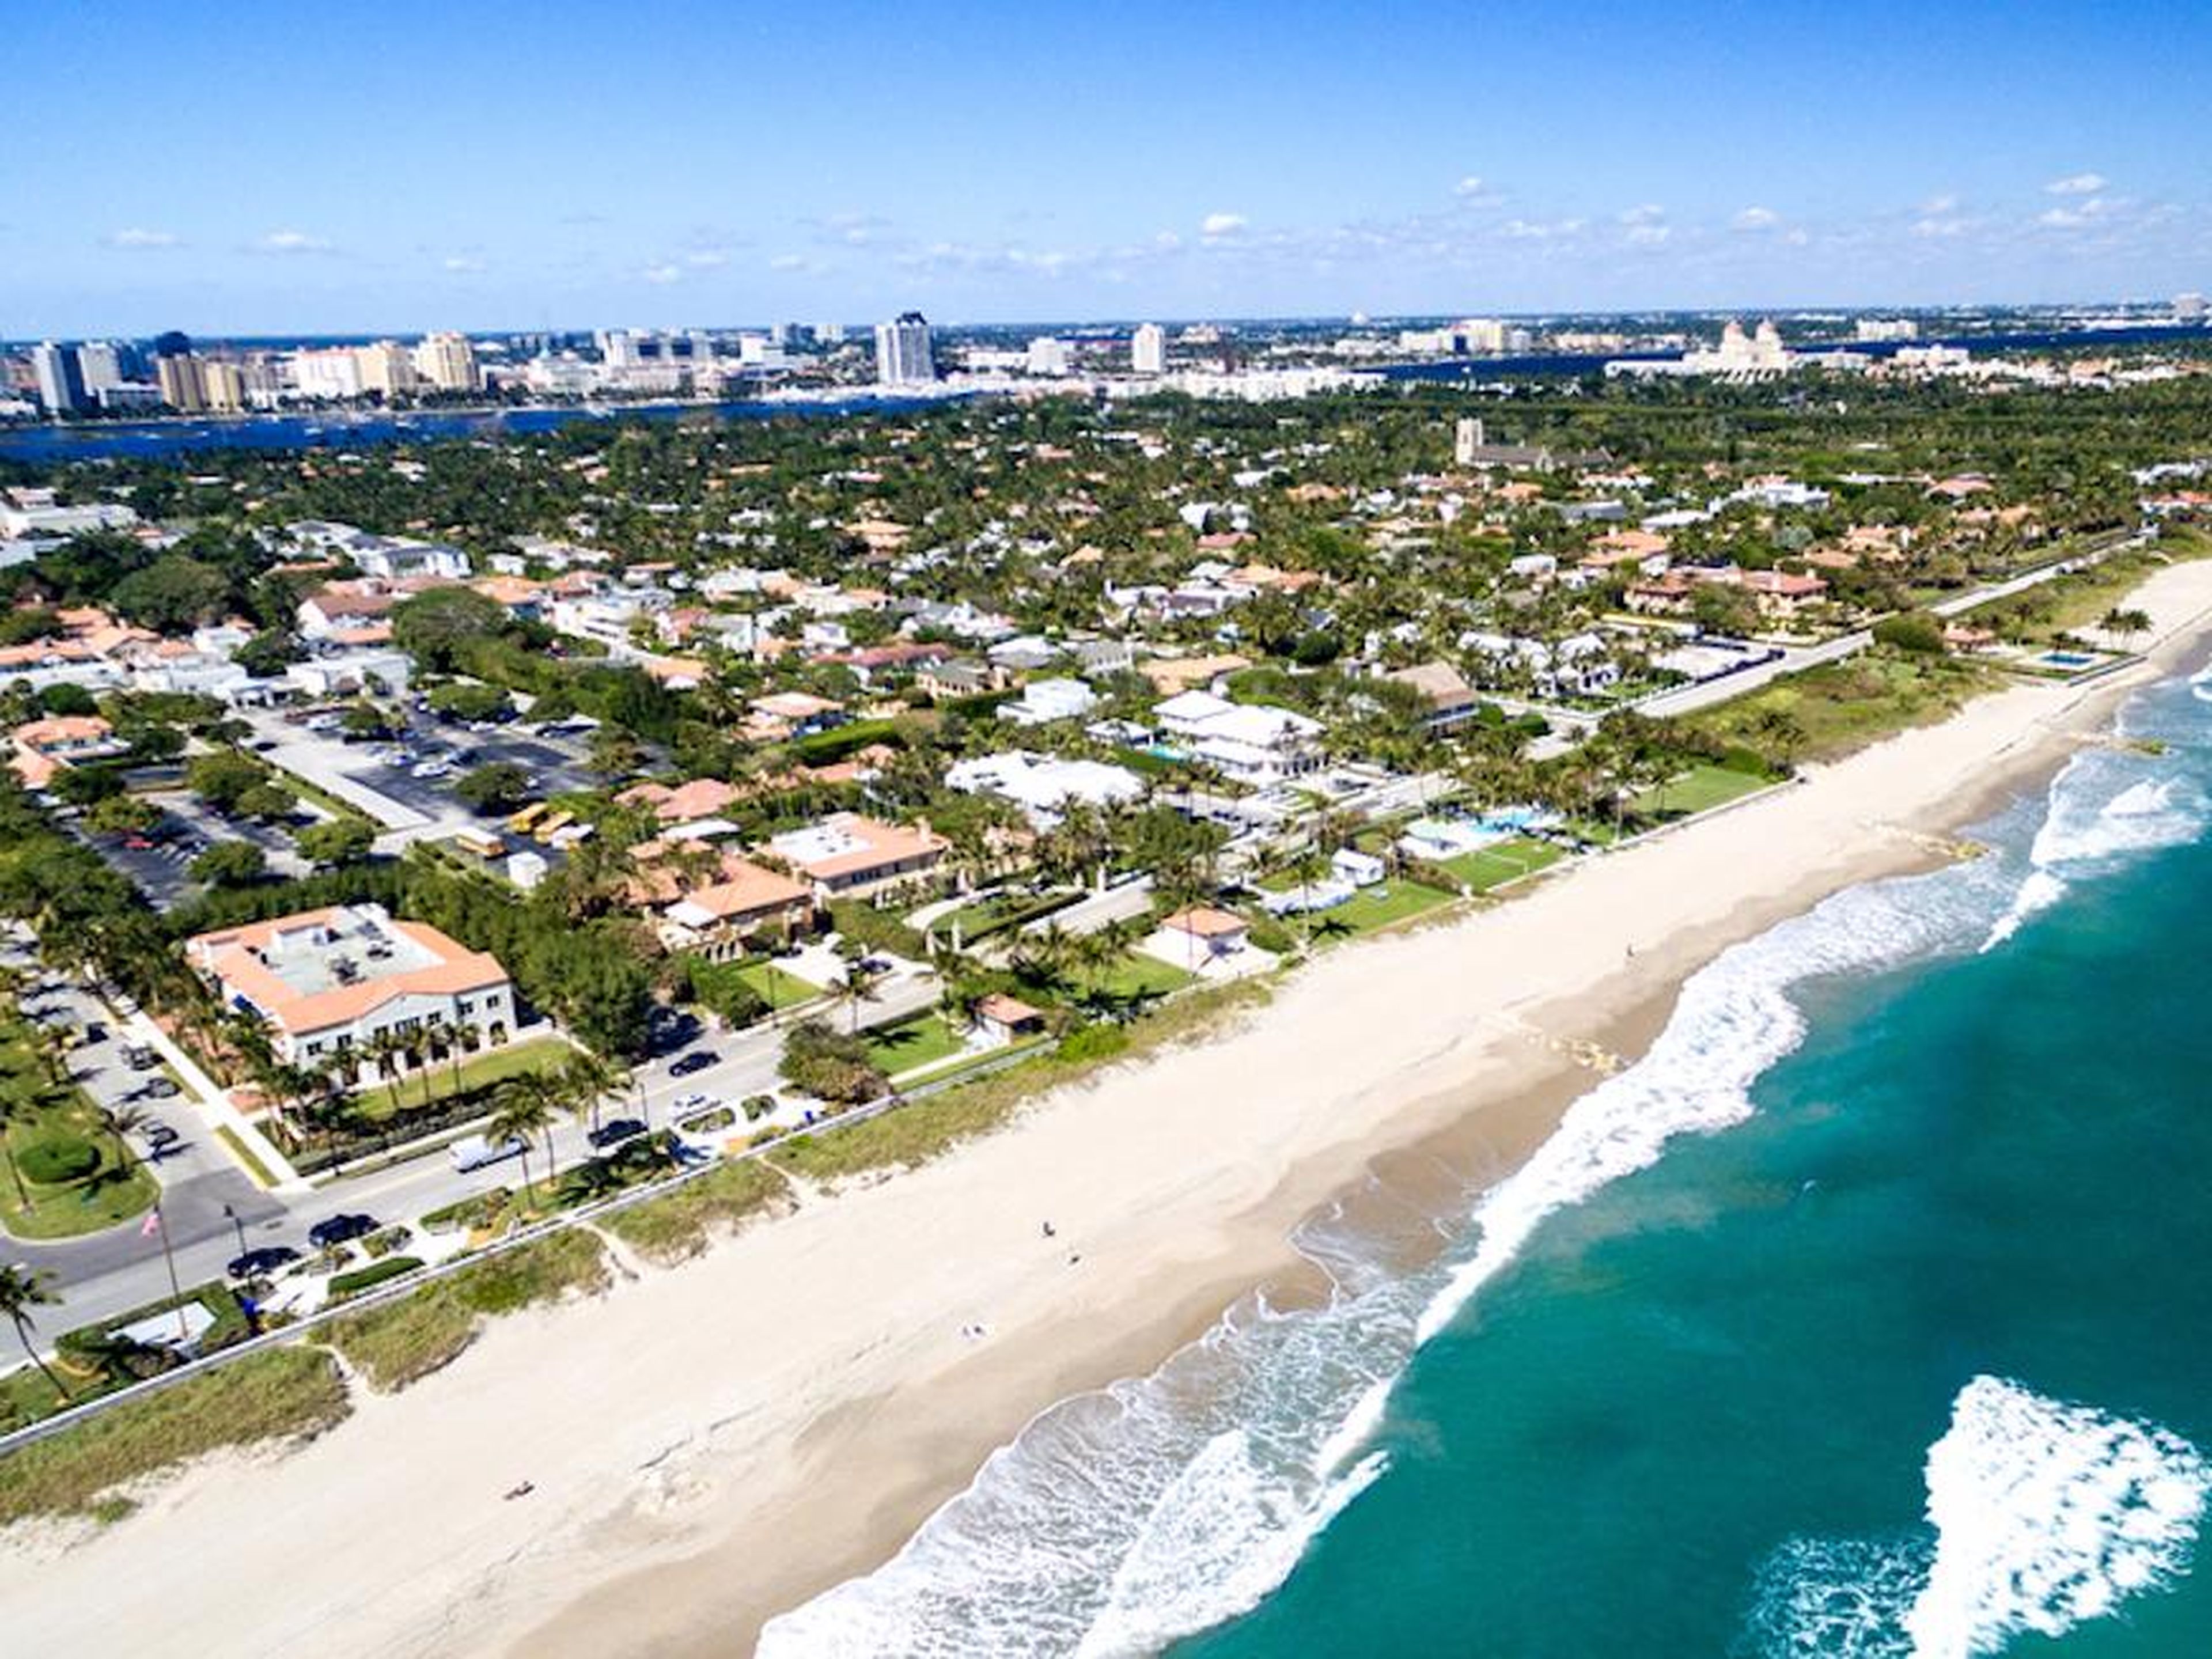 Palm Beach, Florida, where Trump owns three homes.